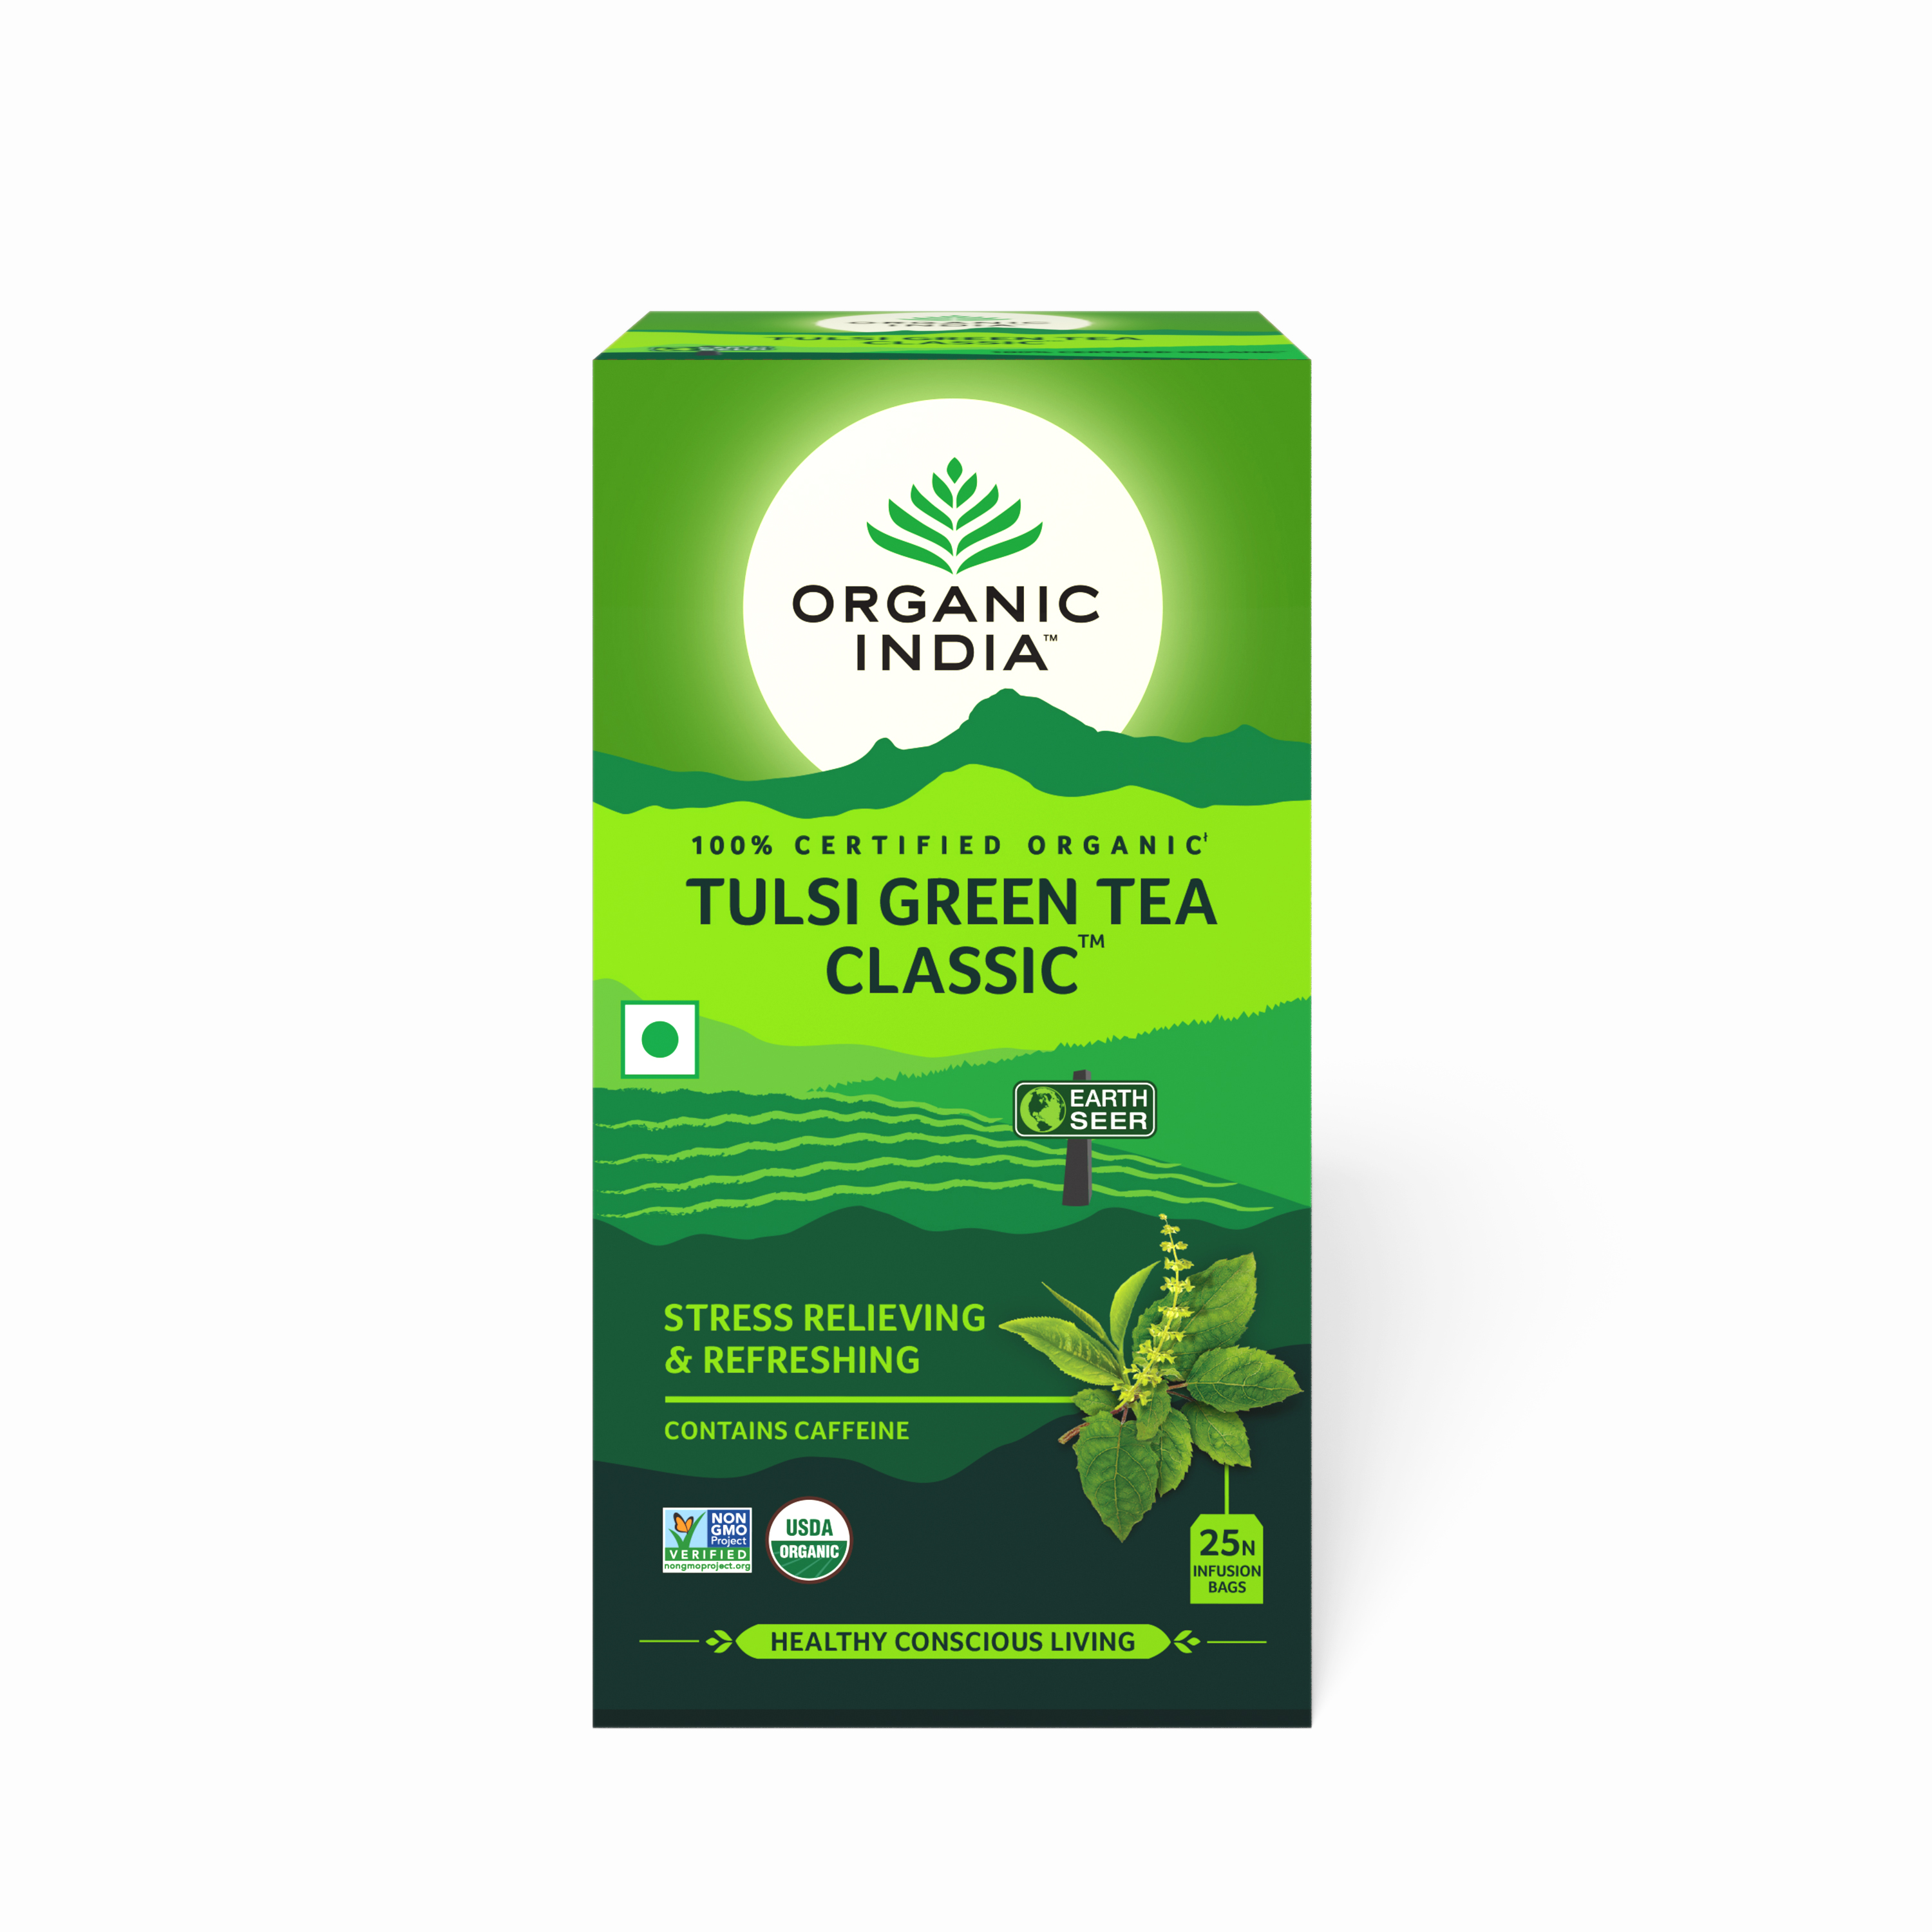 Organic India Tulsi Green Classic